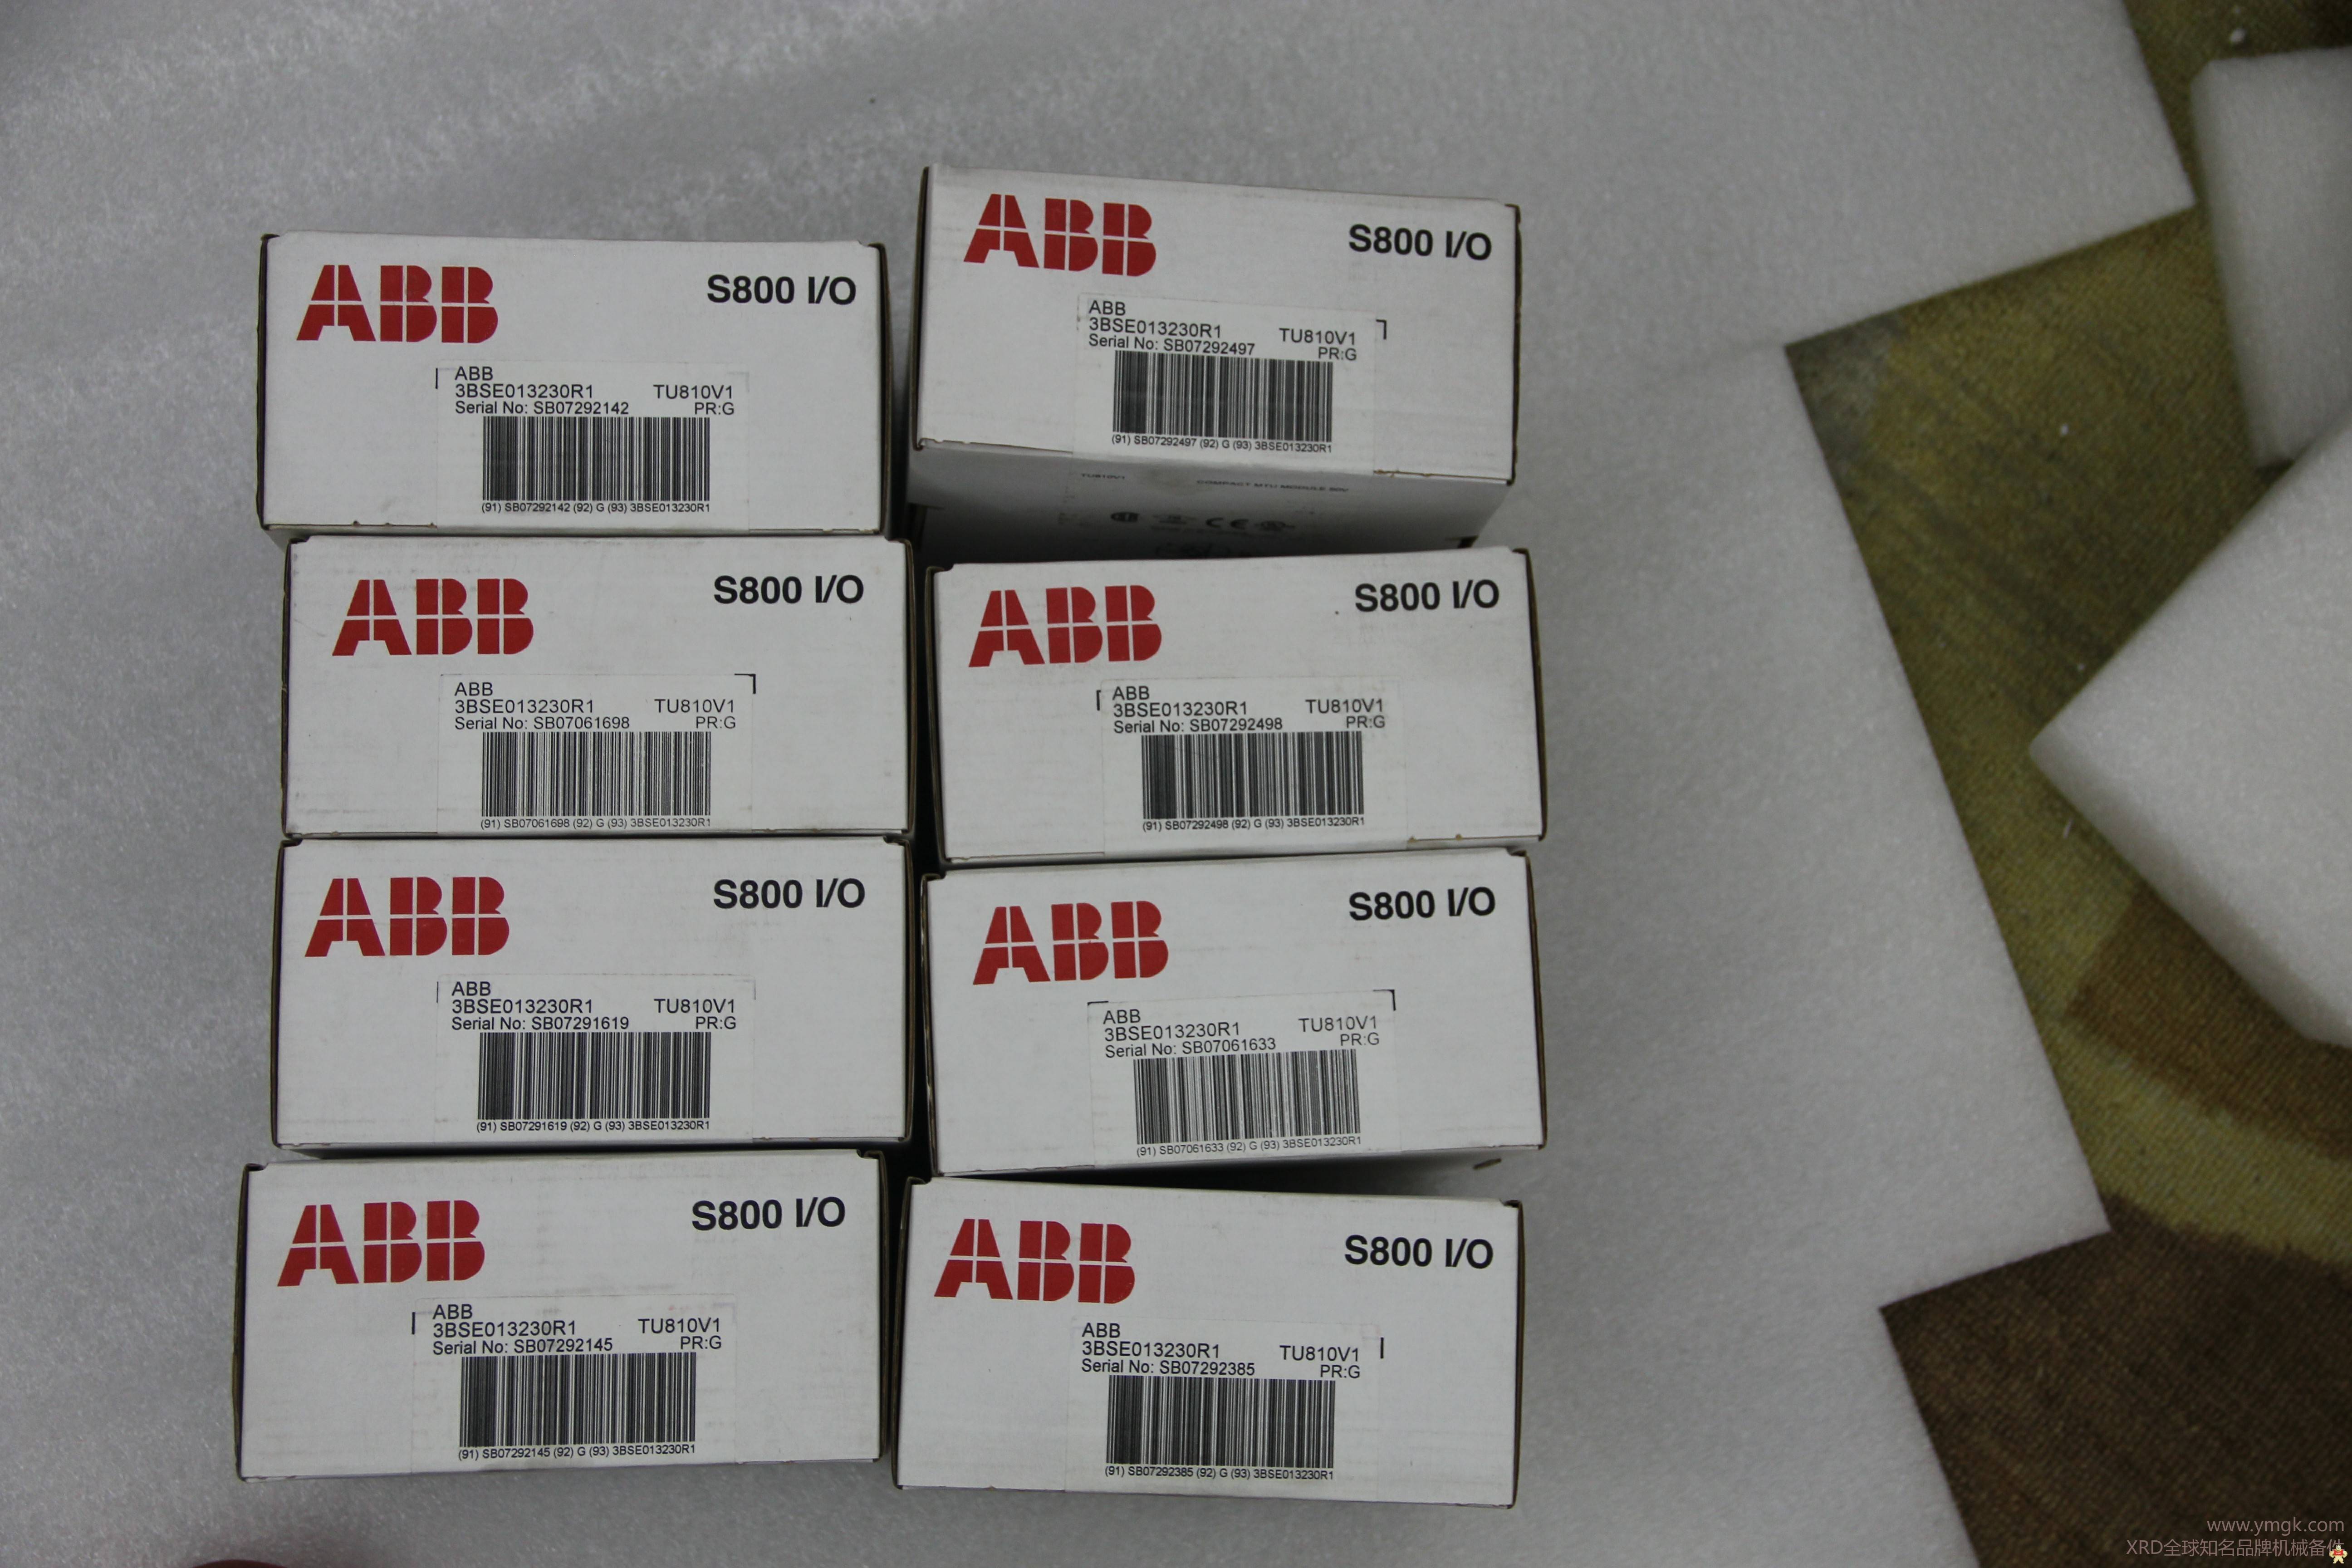 ABB	BB510(DC5256) ABB,ABB,ABB